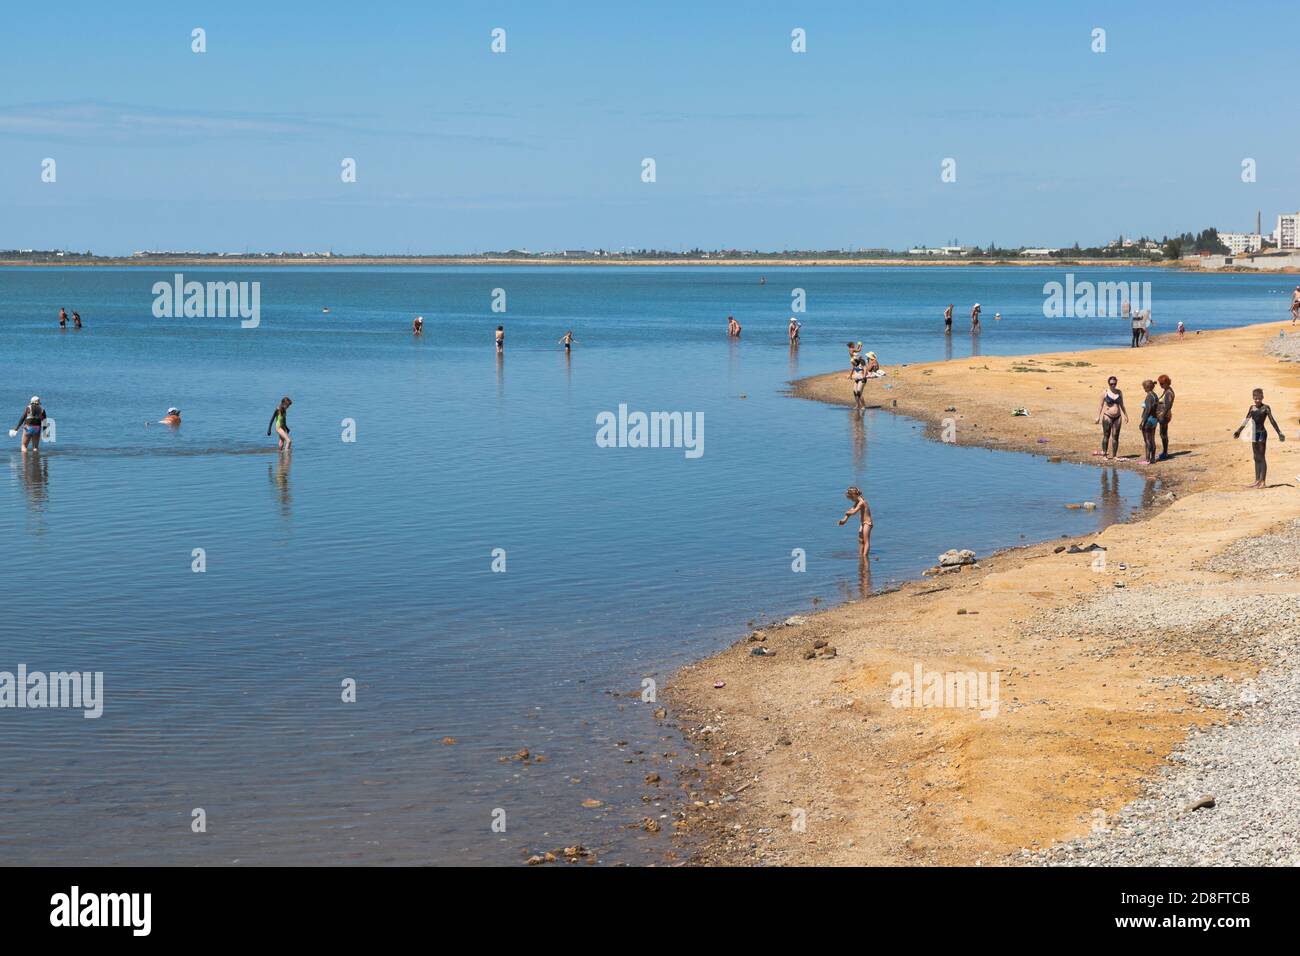 Saki, Crimea, Russia - July 23, 2020: People smear themselves with curative mud on Lake Saki, Crimea Stock Photo